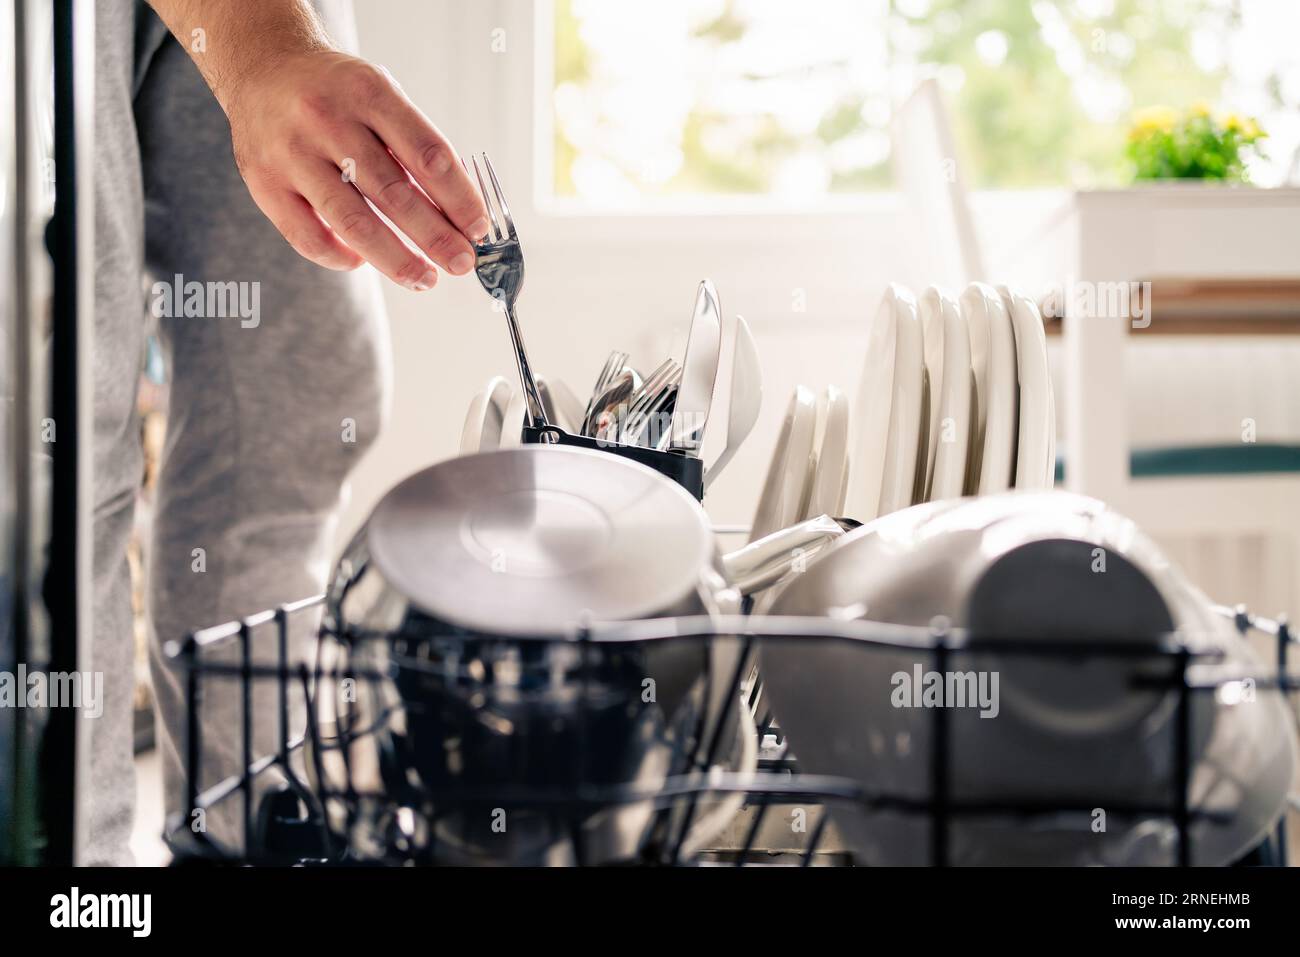 Geschirrspülmaschine in der Küche. Mann lädt Geschirrspüler ein. Waschteller. Gabel in der Hand. Voll mit Besteck. Sauber oder schmutzig. Topf und Geschirr. Stockfoto